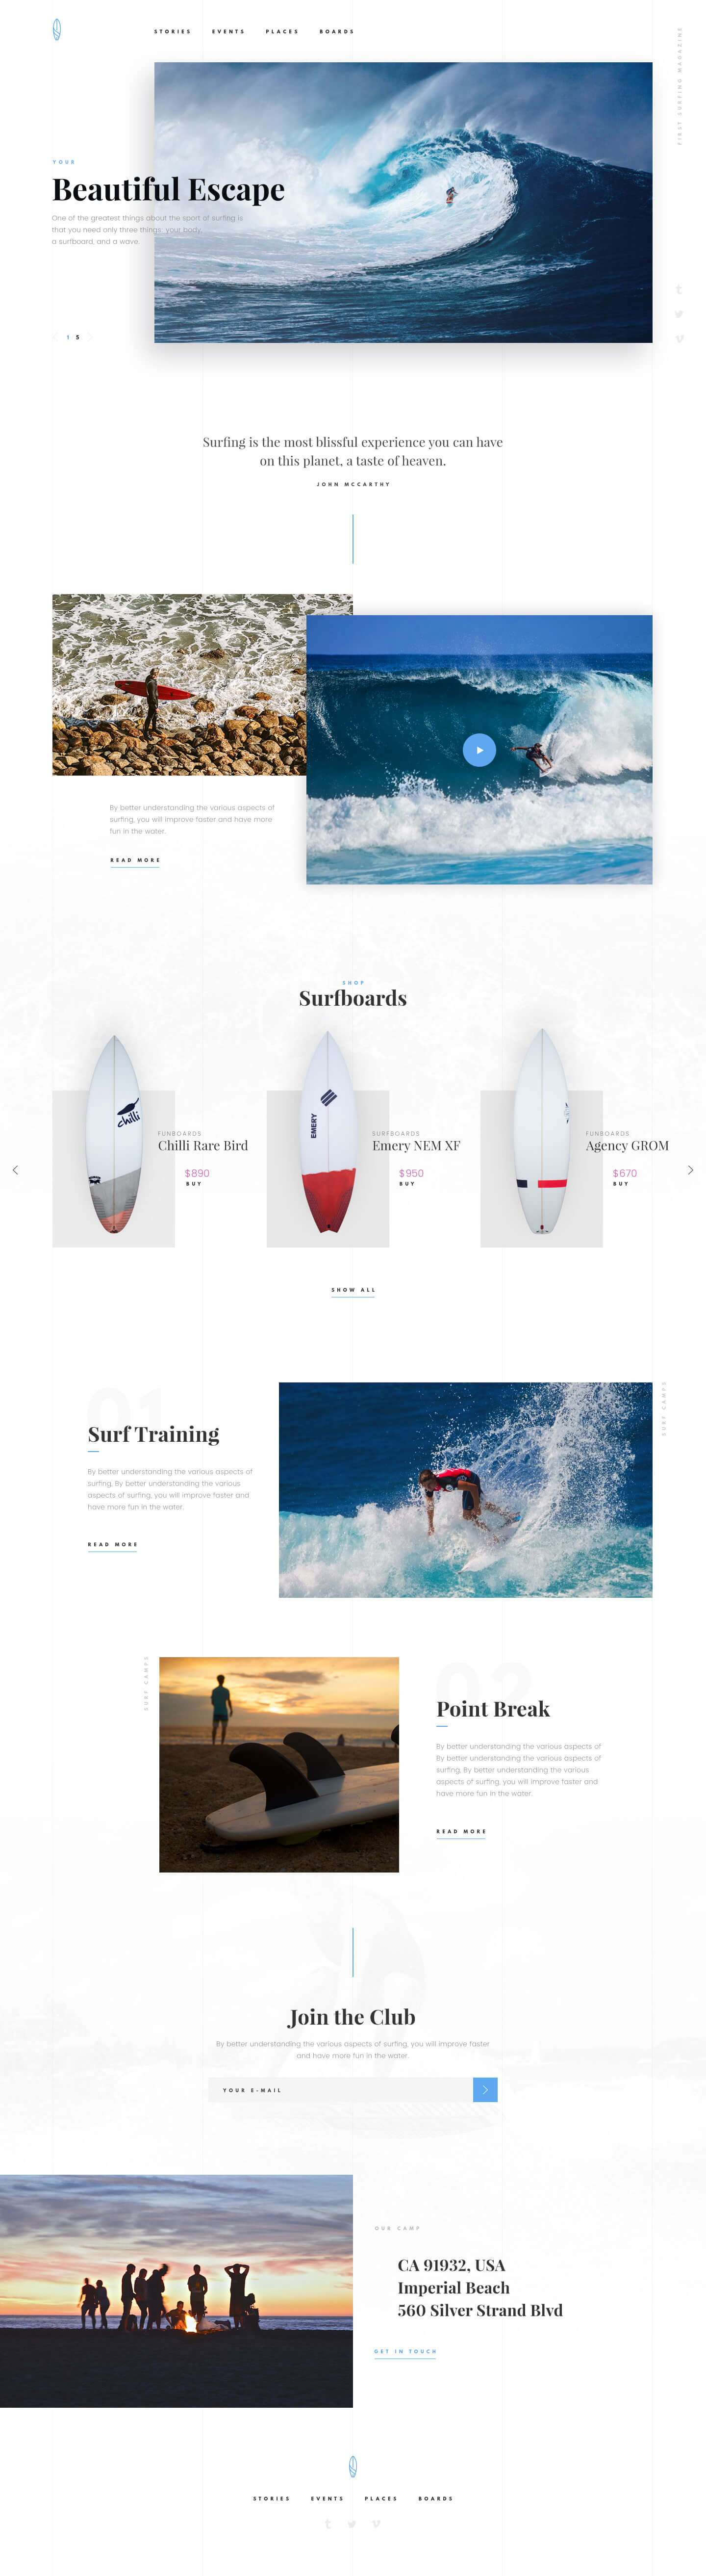 简约大气的体育冲浪网站WEB UI界面设计 .psd素材